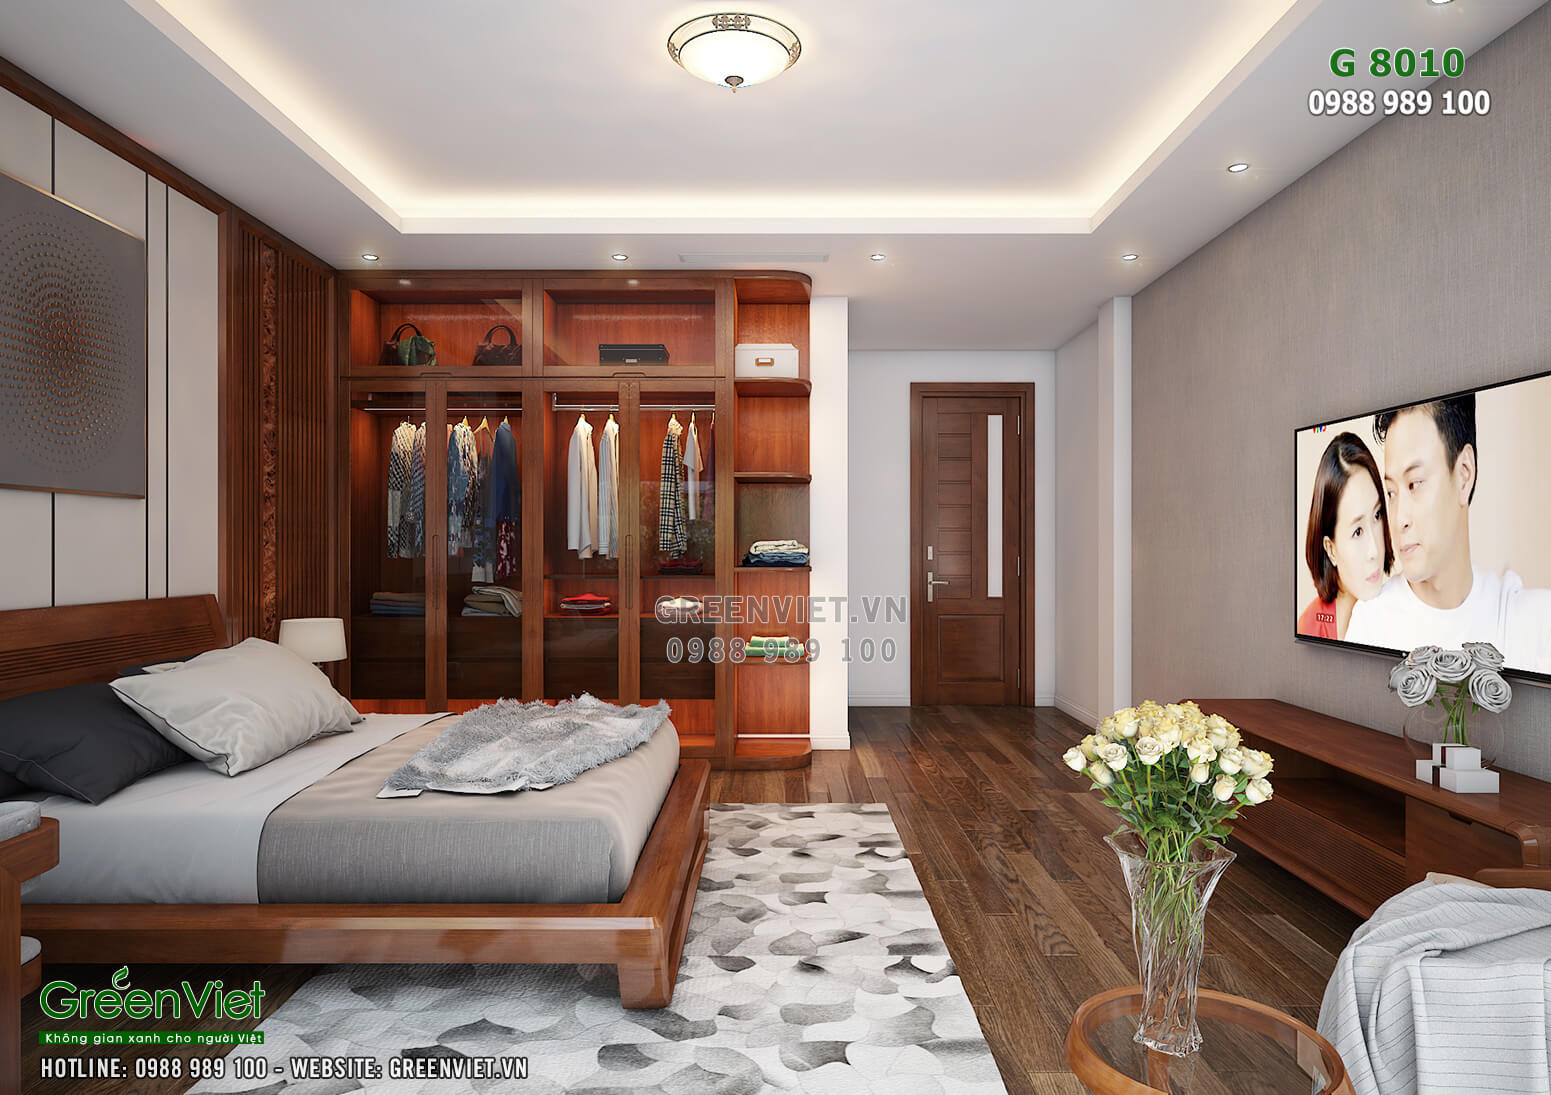 Nội thất phòng ngủ tầng 1 cũng được lát sàn gỗ giữ ấm vào mùa đông và mát mẻ vào mùa hè